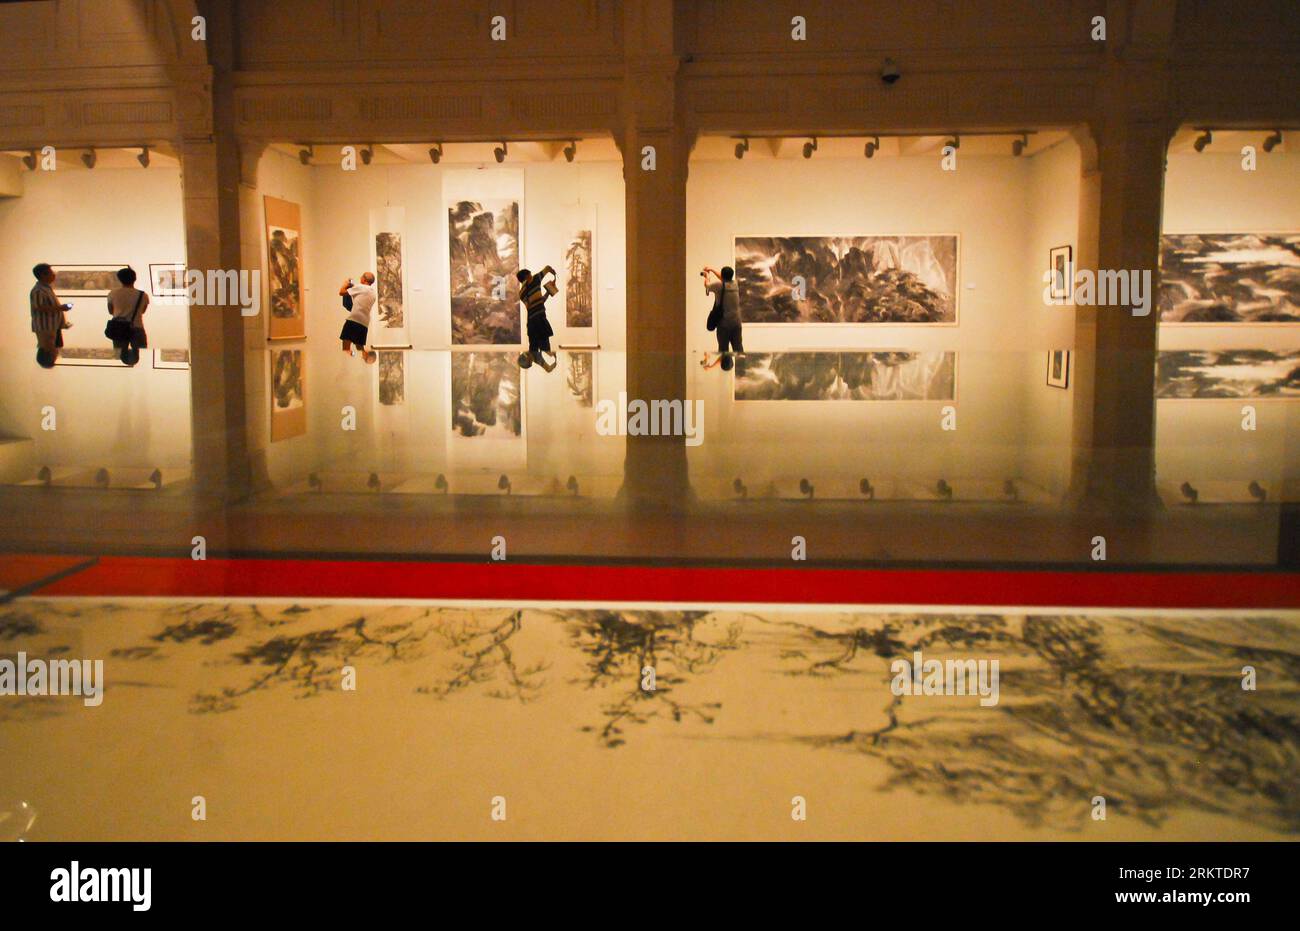 Bildnummer : 58453519 Datum : 10.09.2012 Copyright : imago/Xinhua (120910) -- SHANGHAI, 10 septembre 2012 (Xinhua) -- les visiteurs regardent une exposition de peinture au Shanghai Art Museum à Shanghai, dans l'est de la Chine, le 10 septembre 2012. Le 1 octobre 2012, le Musée d'Art de Shanghai sera transféré dans le bâtiment utilisé pour être le Pavillon de la Chine lors de l'exposition universelle de Shanghai de 2010. Au total, 27 salles d'exposition seront installées au musée d'art, couvrant une surface d'exposition de plus de 64000 mètres carrés. (Xinhua) (zhs) CHINA-SHANGHAI-ART MUSEUM-TRANSFER (CN) PUBLICATIONxNOTxINxCHN Kultur Kunst Museum Ausstellung x0 Banque D'Images